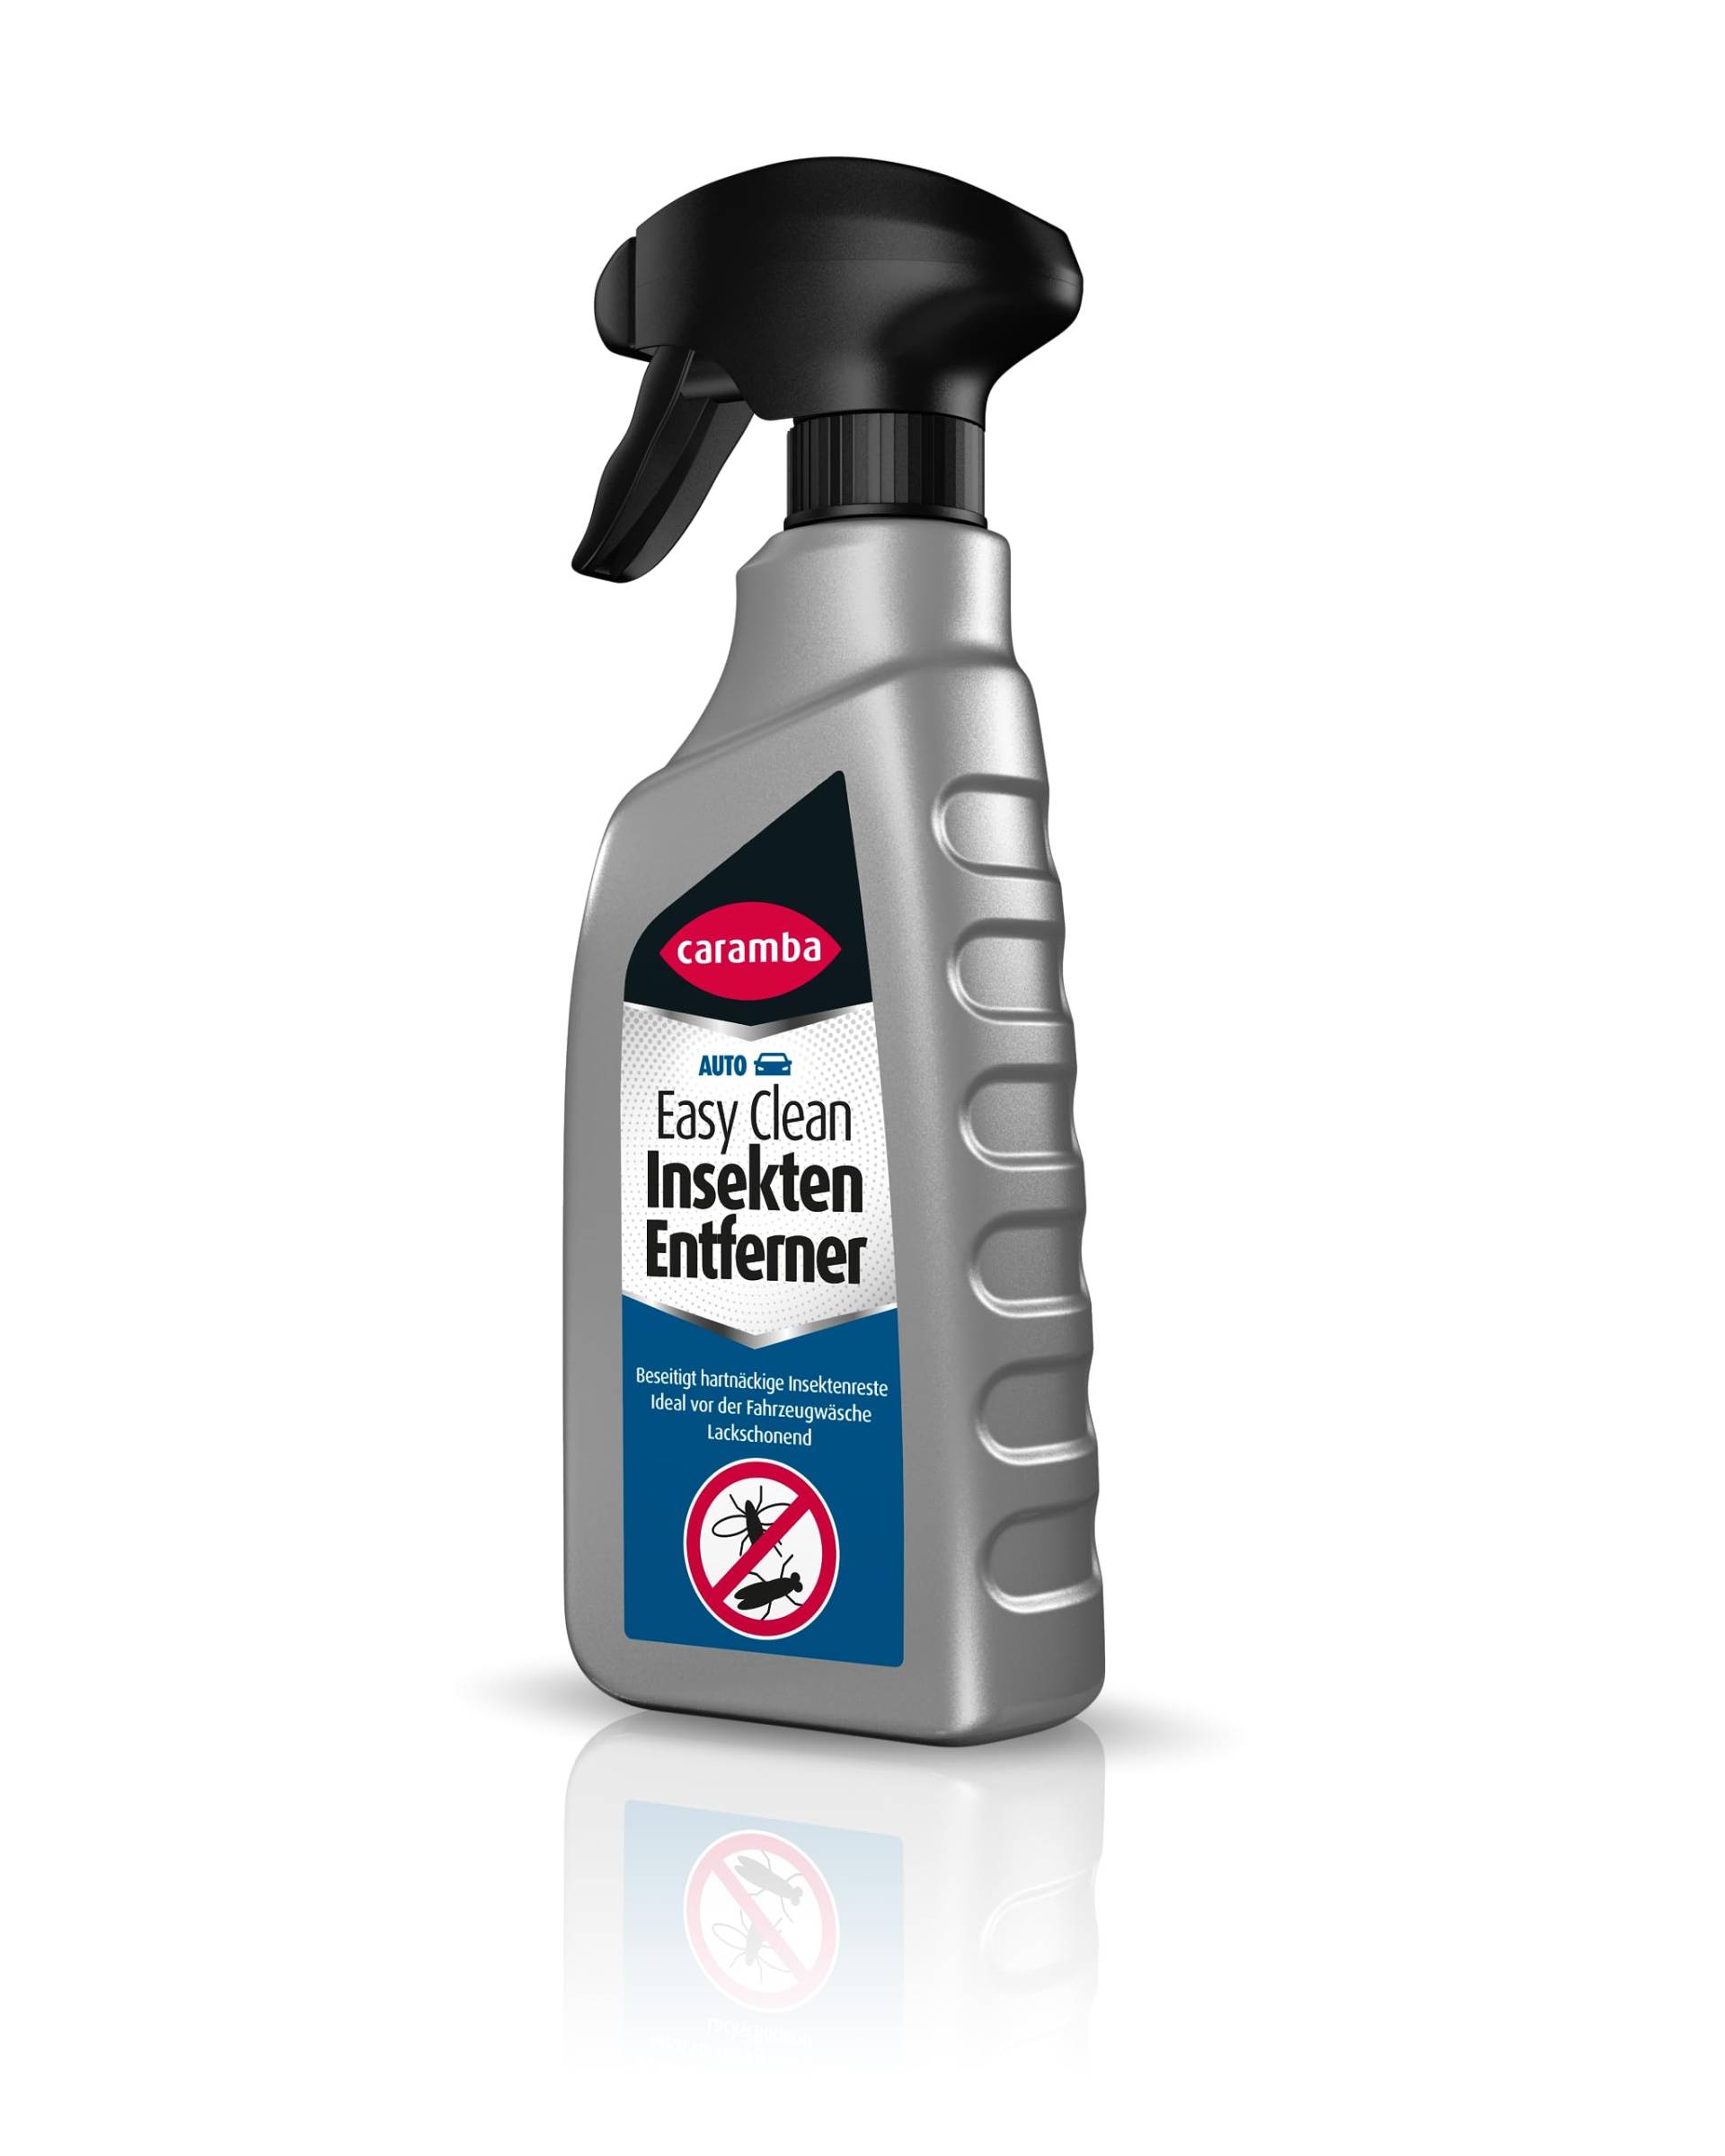 Caramba Easy Clean Insekten Entferner (500 ml) – Insektenspray gegen hartnäckige Insektenreste am Auto – lackschonender Auto Reiniger für klare Sicht und glänzenden Lack von Caramba